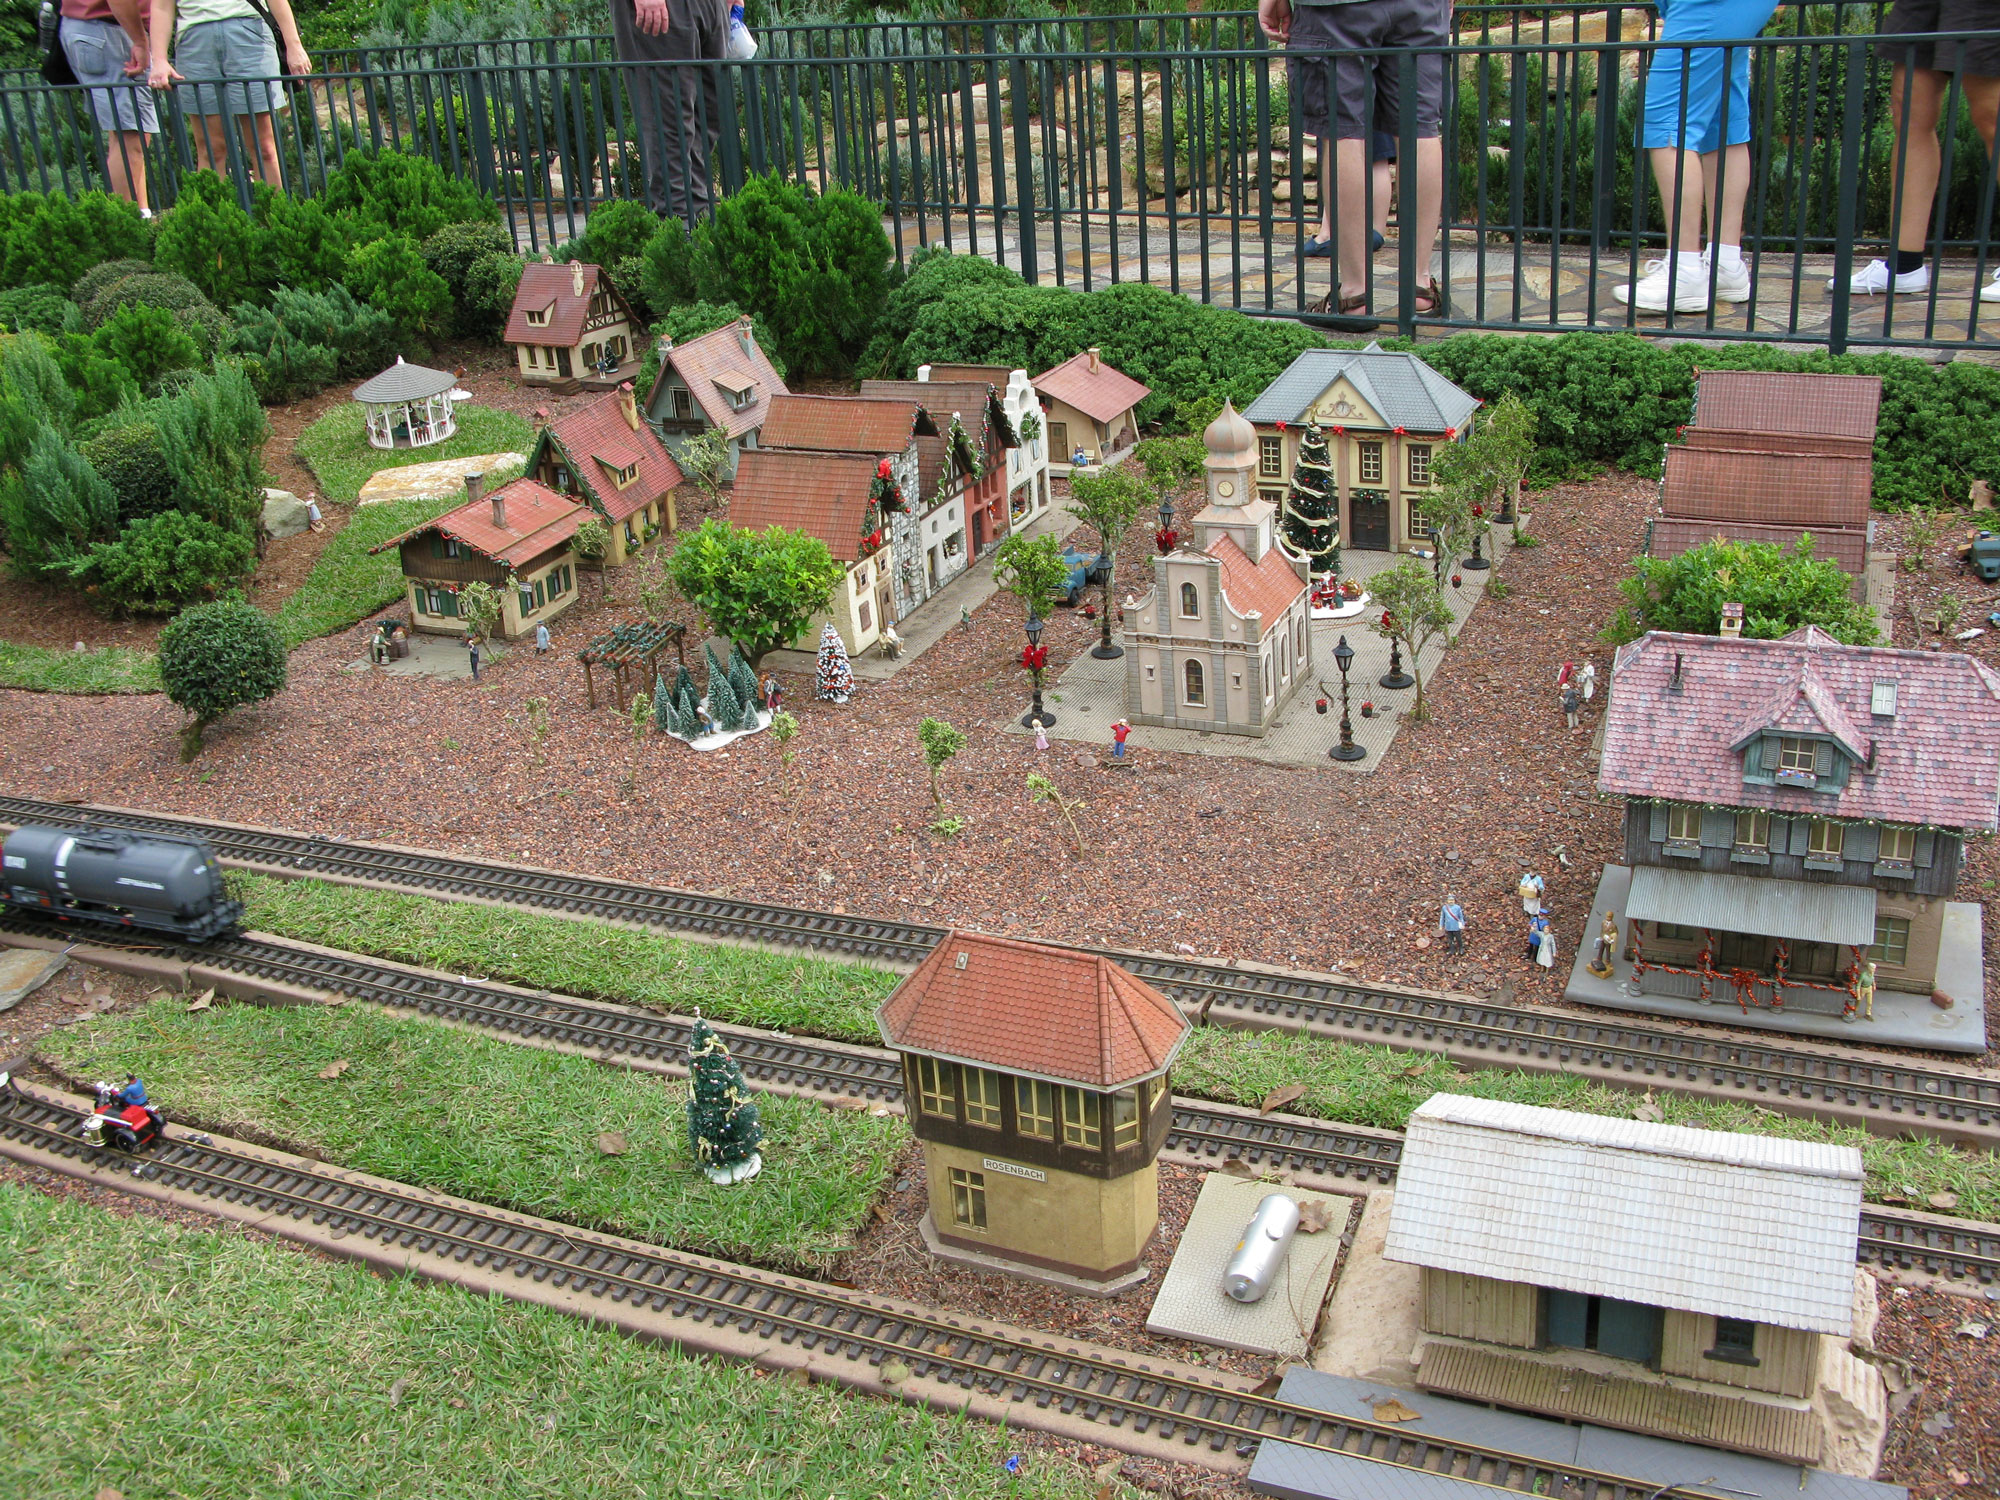 Kindereisenbahn (toy train)